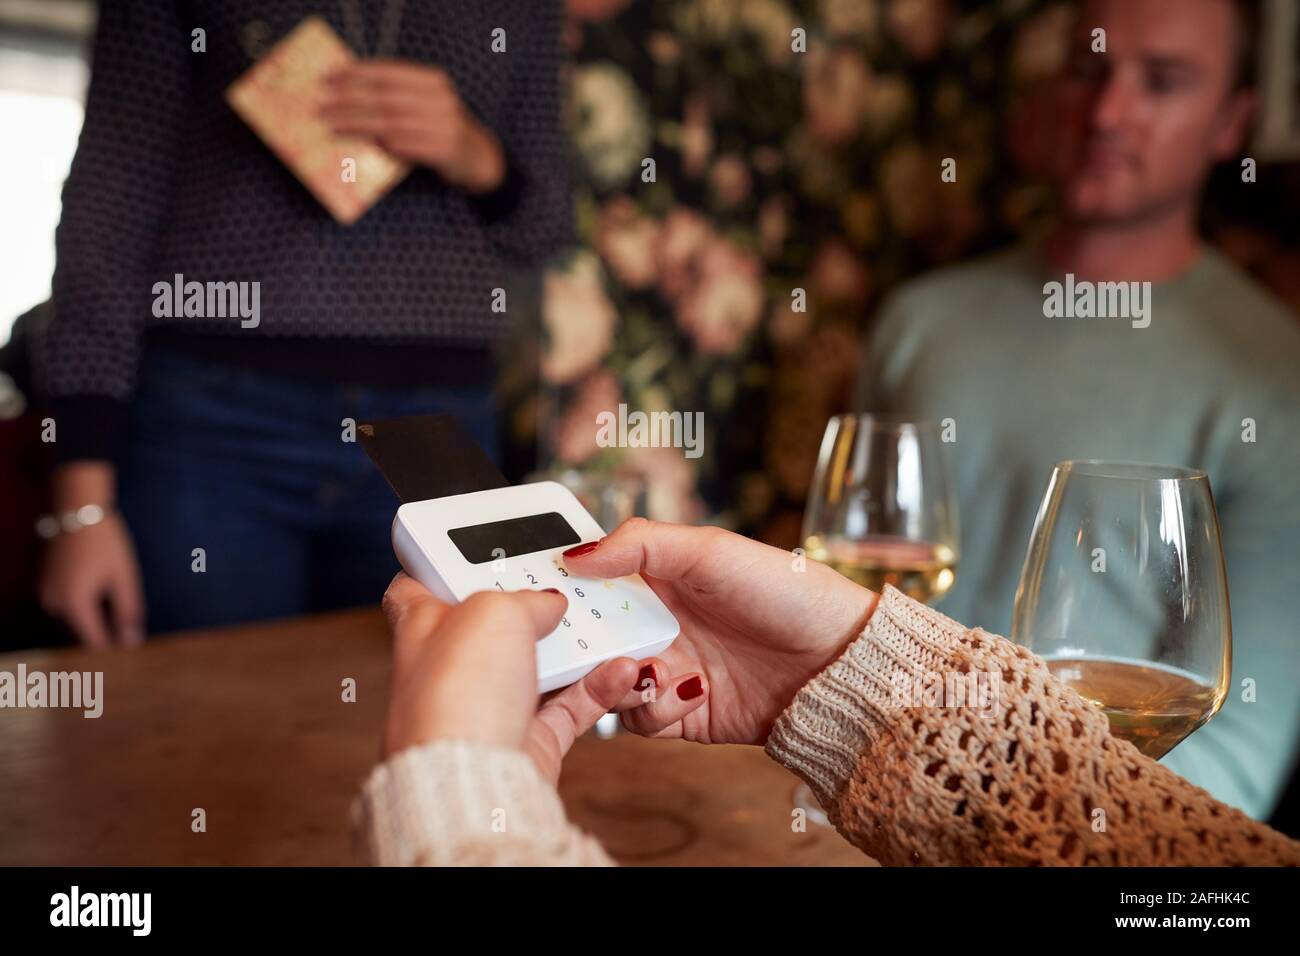 Cerca del cliente en el restaurante introduciendo el número PIN en la tarjeta de crédito Terminal Foto de stock